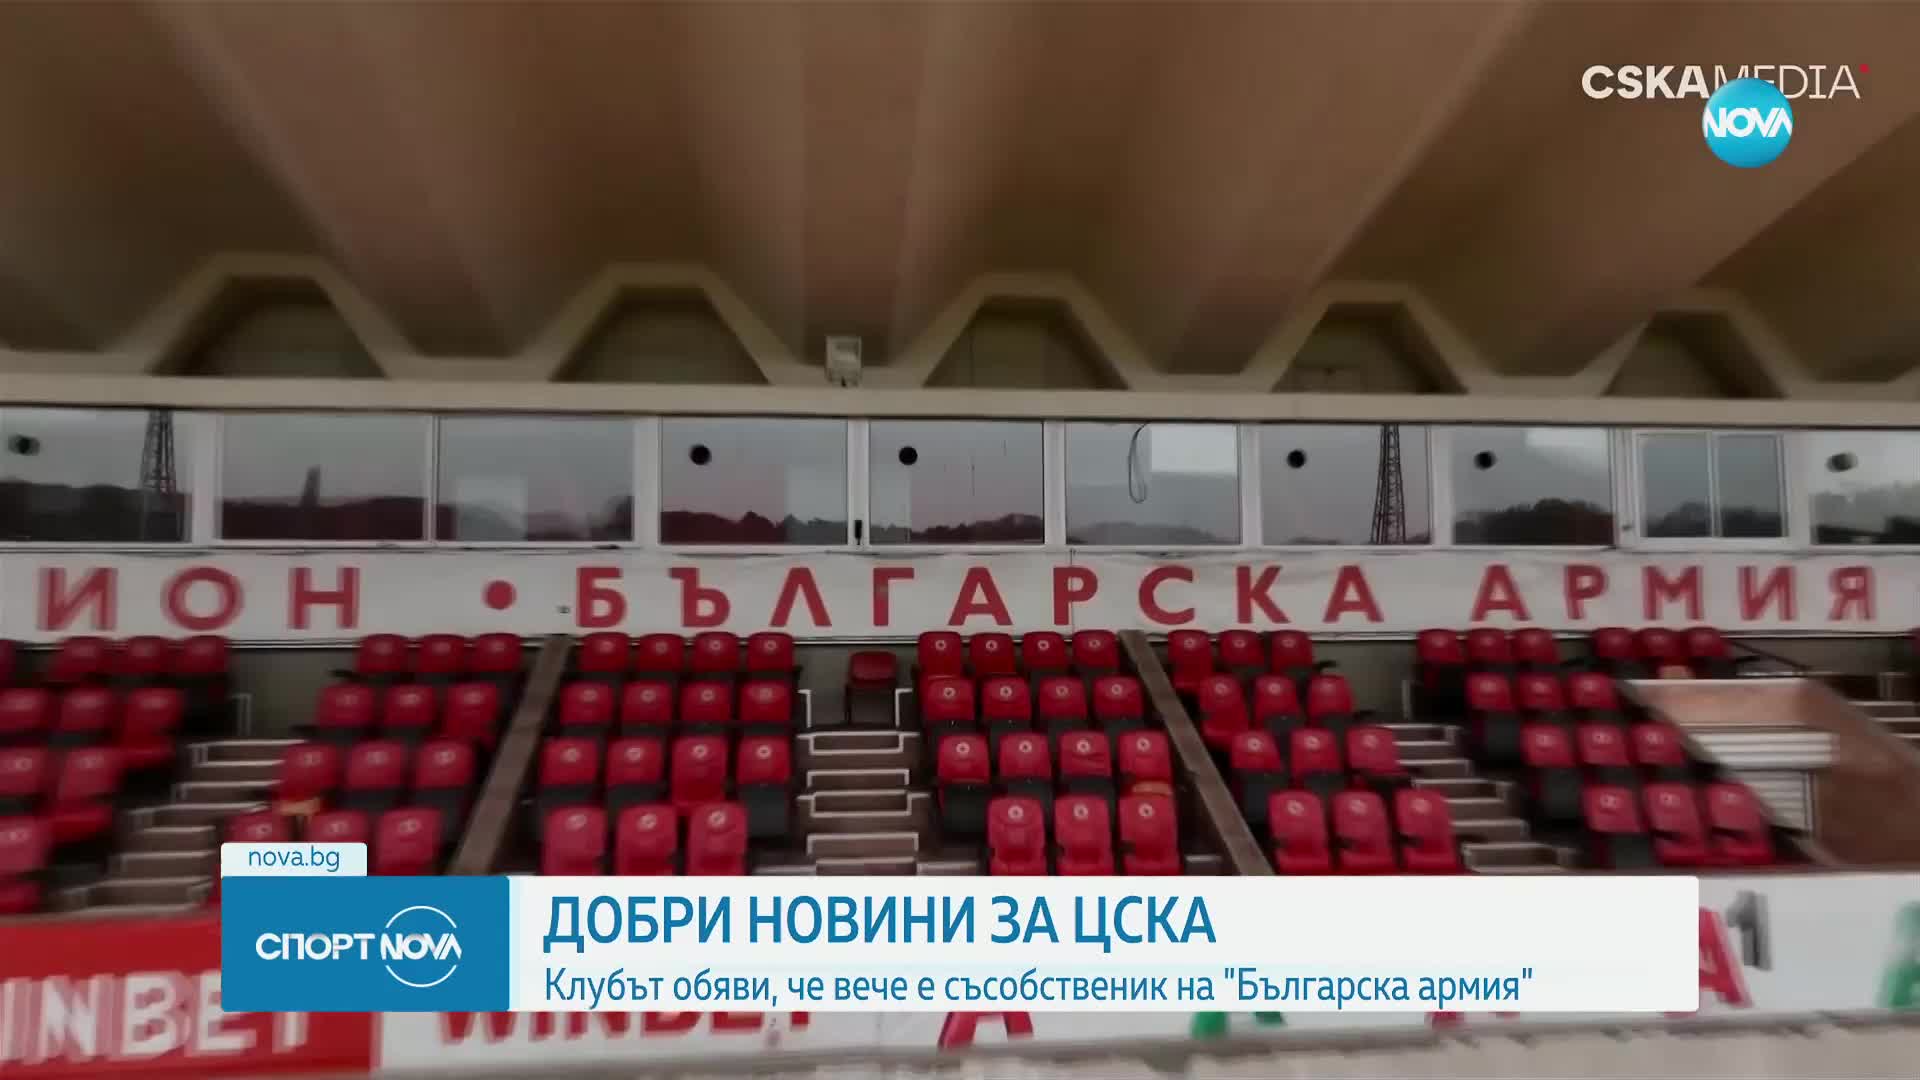 ЦСКА обяви, че вече е съсобственик на Българска армия